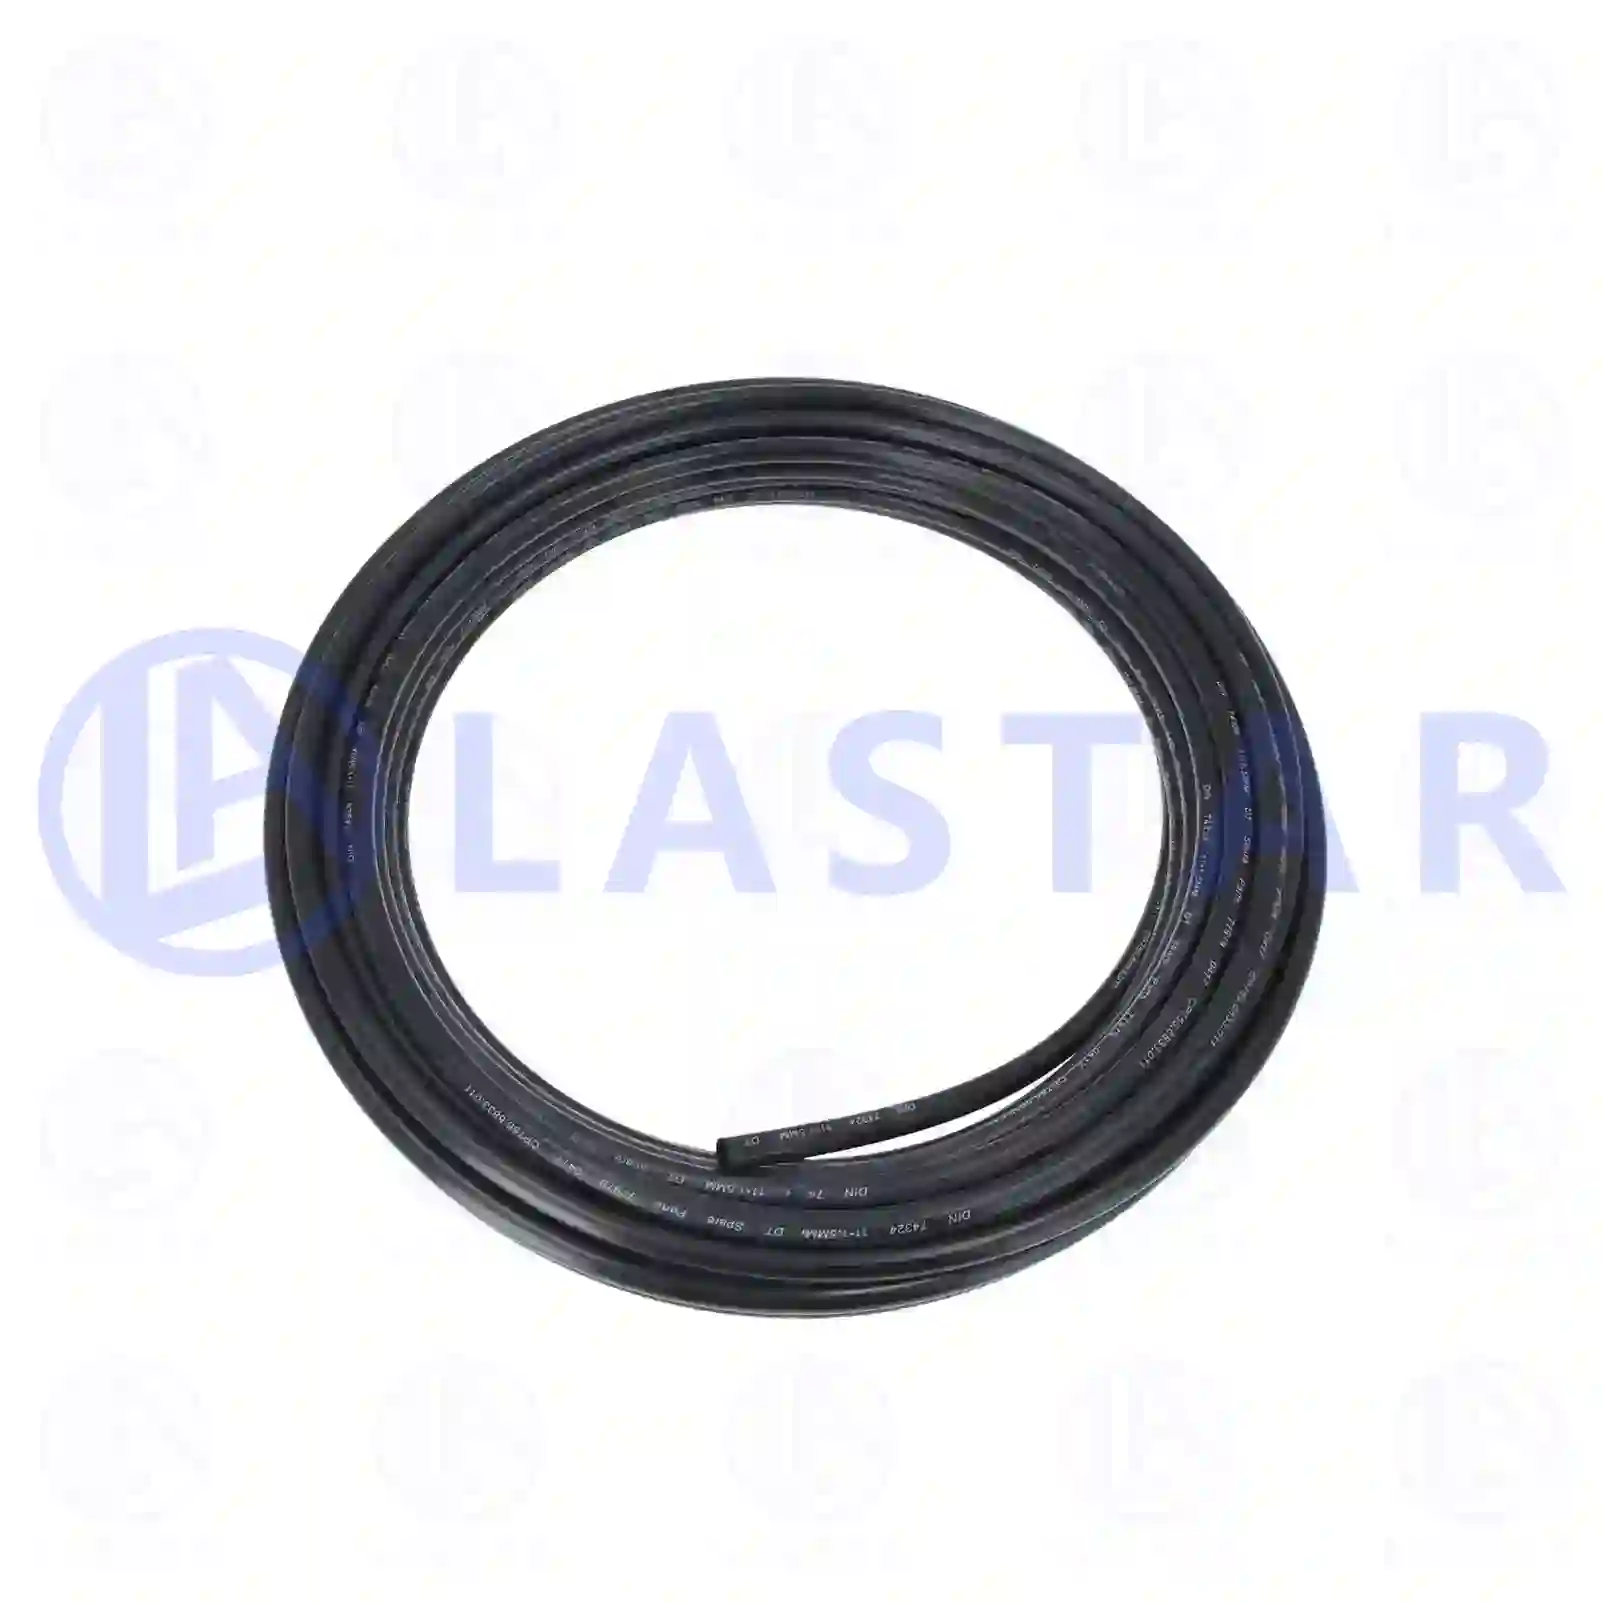 Nylon pipe, black, 77725576, 883674, 04351609211, 04351609611, 04351609711, 51963300210, 51963300381, 51963300388, 86461310111, 0089975482, 0089975582, 5689330661, ZG50533-0008 ||  77725576 Lastar Spare Part | Truck Spare Parts, Auotomotive Spare Parts Nylon pipe, black, 77725576, 883674, 04351609211, 04351609611, 04351609711, 51963300210, 51963300381, 51963300388, 86461310111, 0089975482, 0089975582, 5689330661, ZG50533-0008 ||  77725576 Lastar Spare Part | Truck Spare Parts, Auotomotive Spare Parts